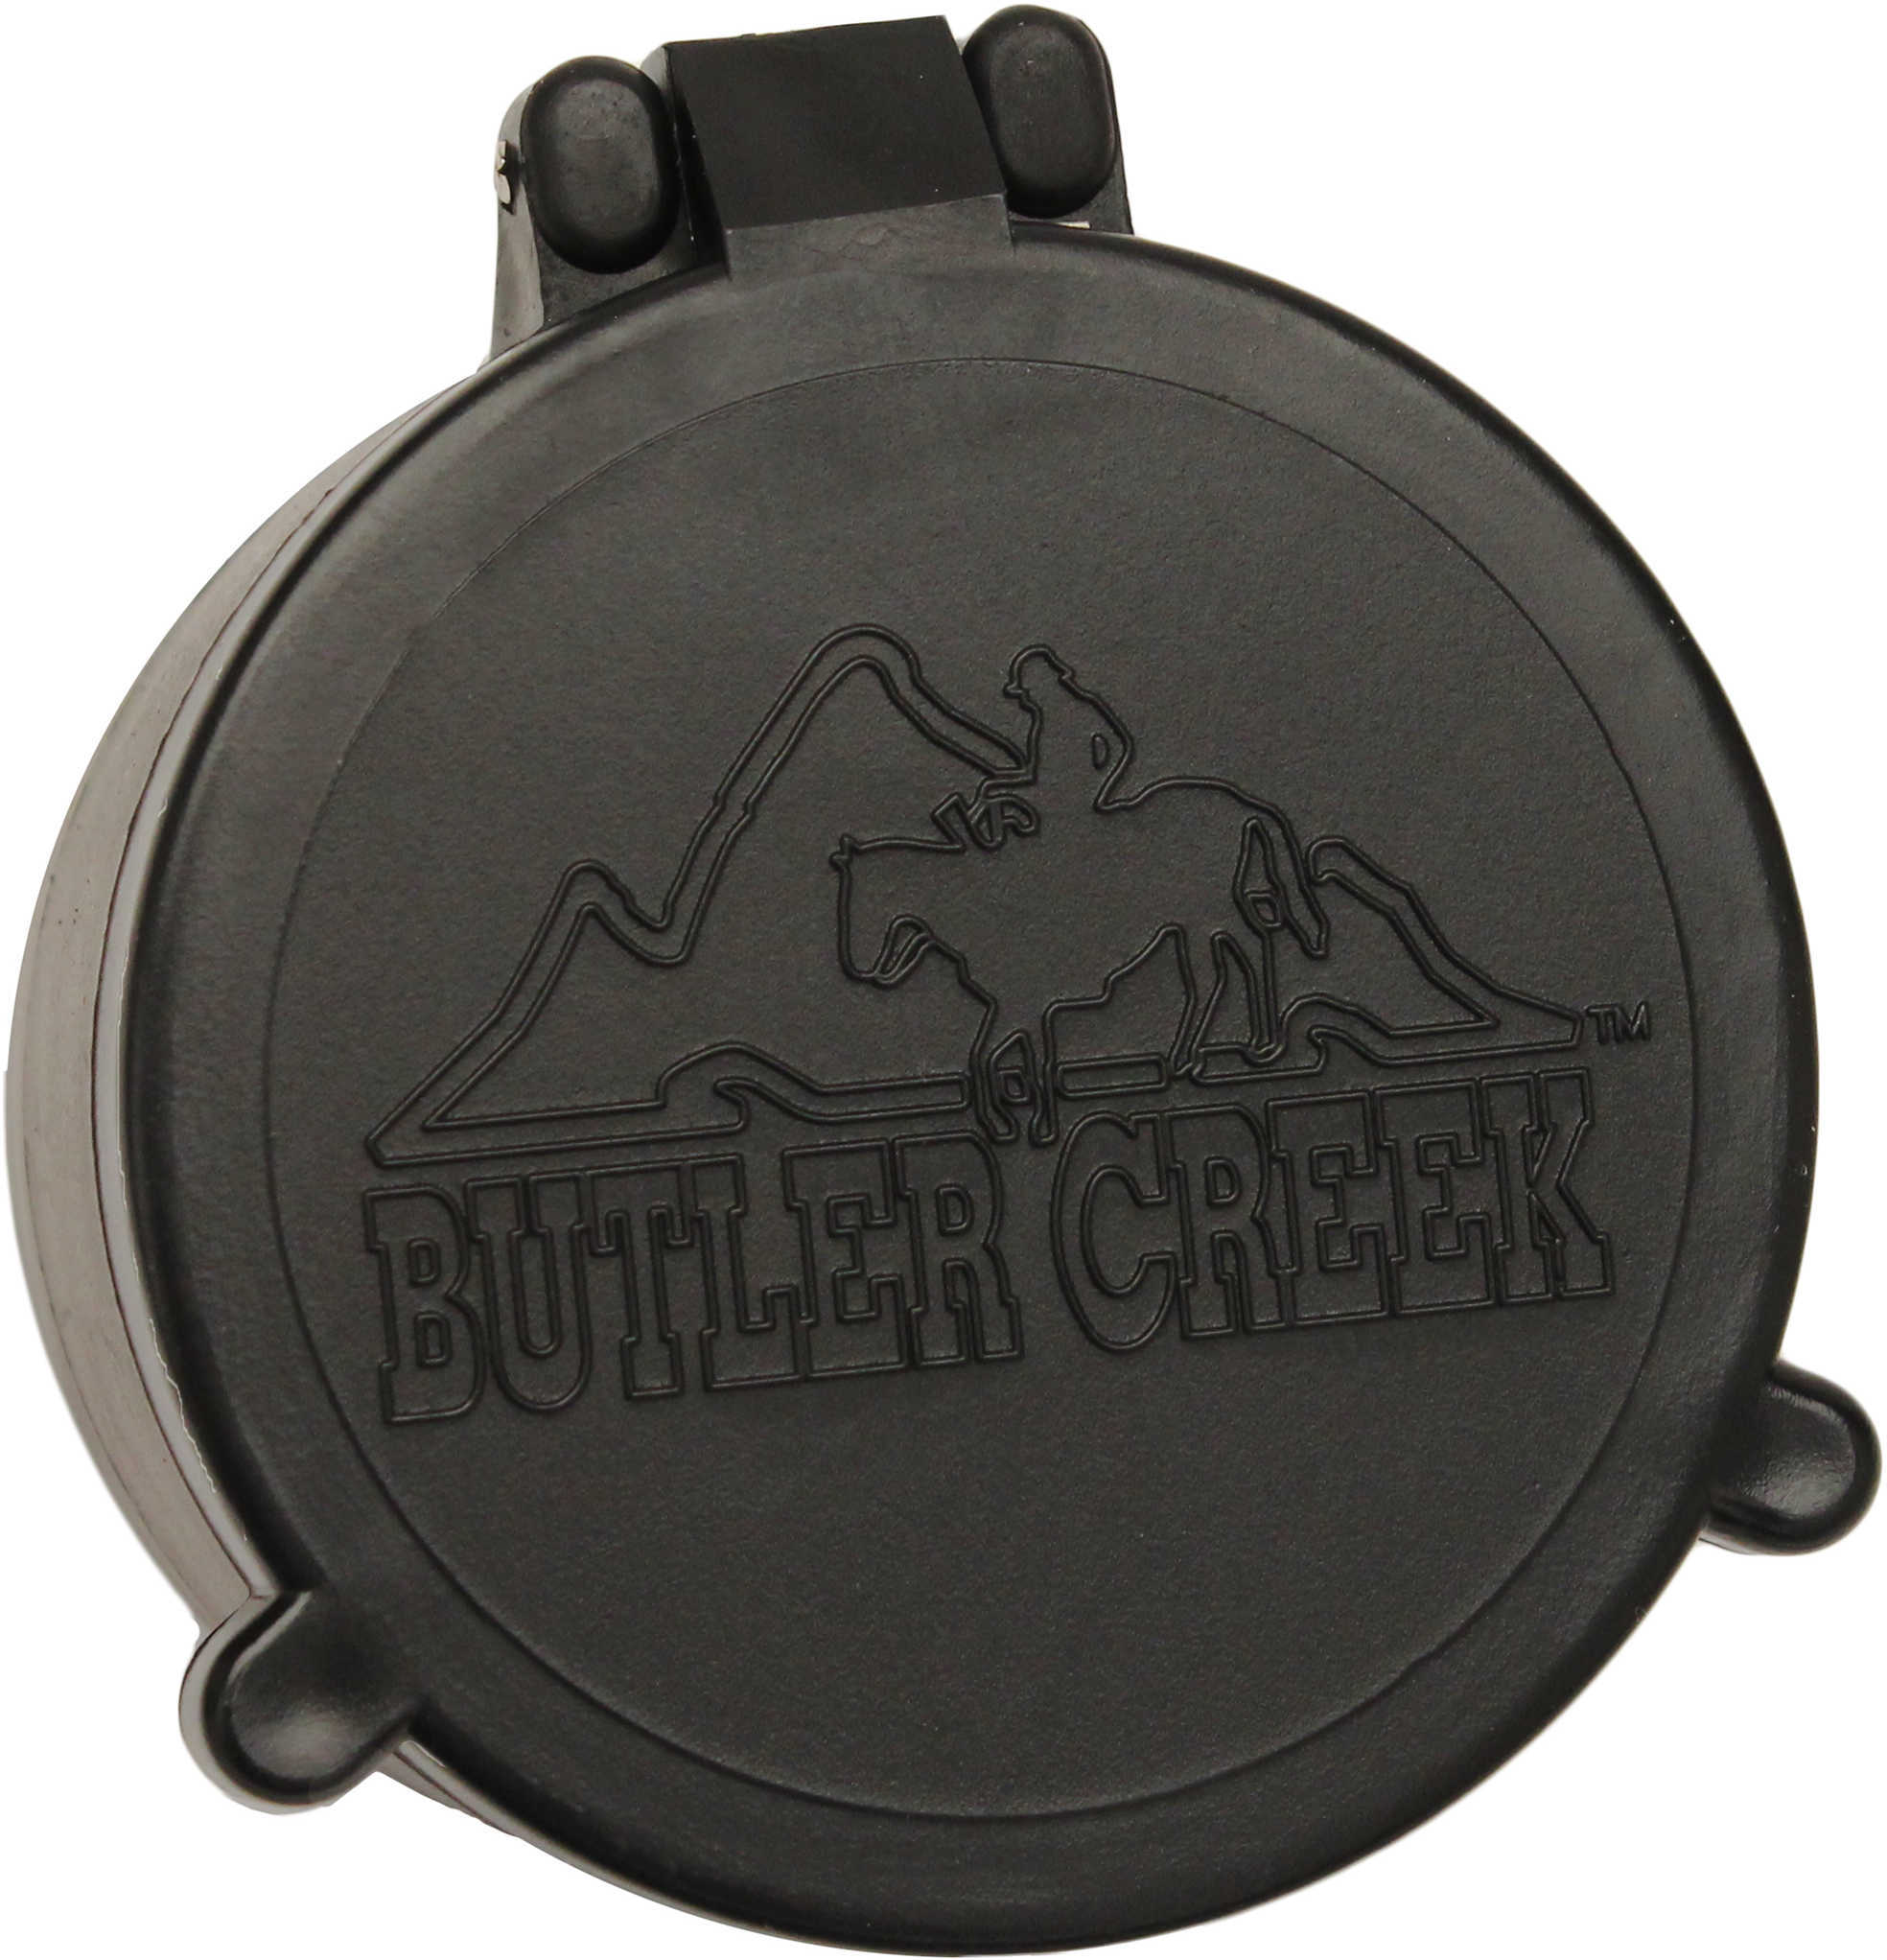 Butler Creek 30040 Flip-Open Scope Cover Objective Lens 27.80mm Slip On Polymer Black